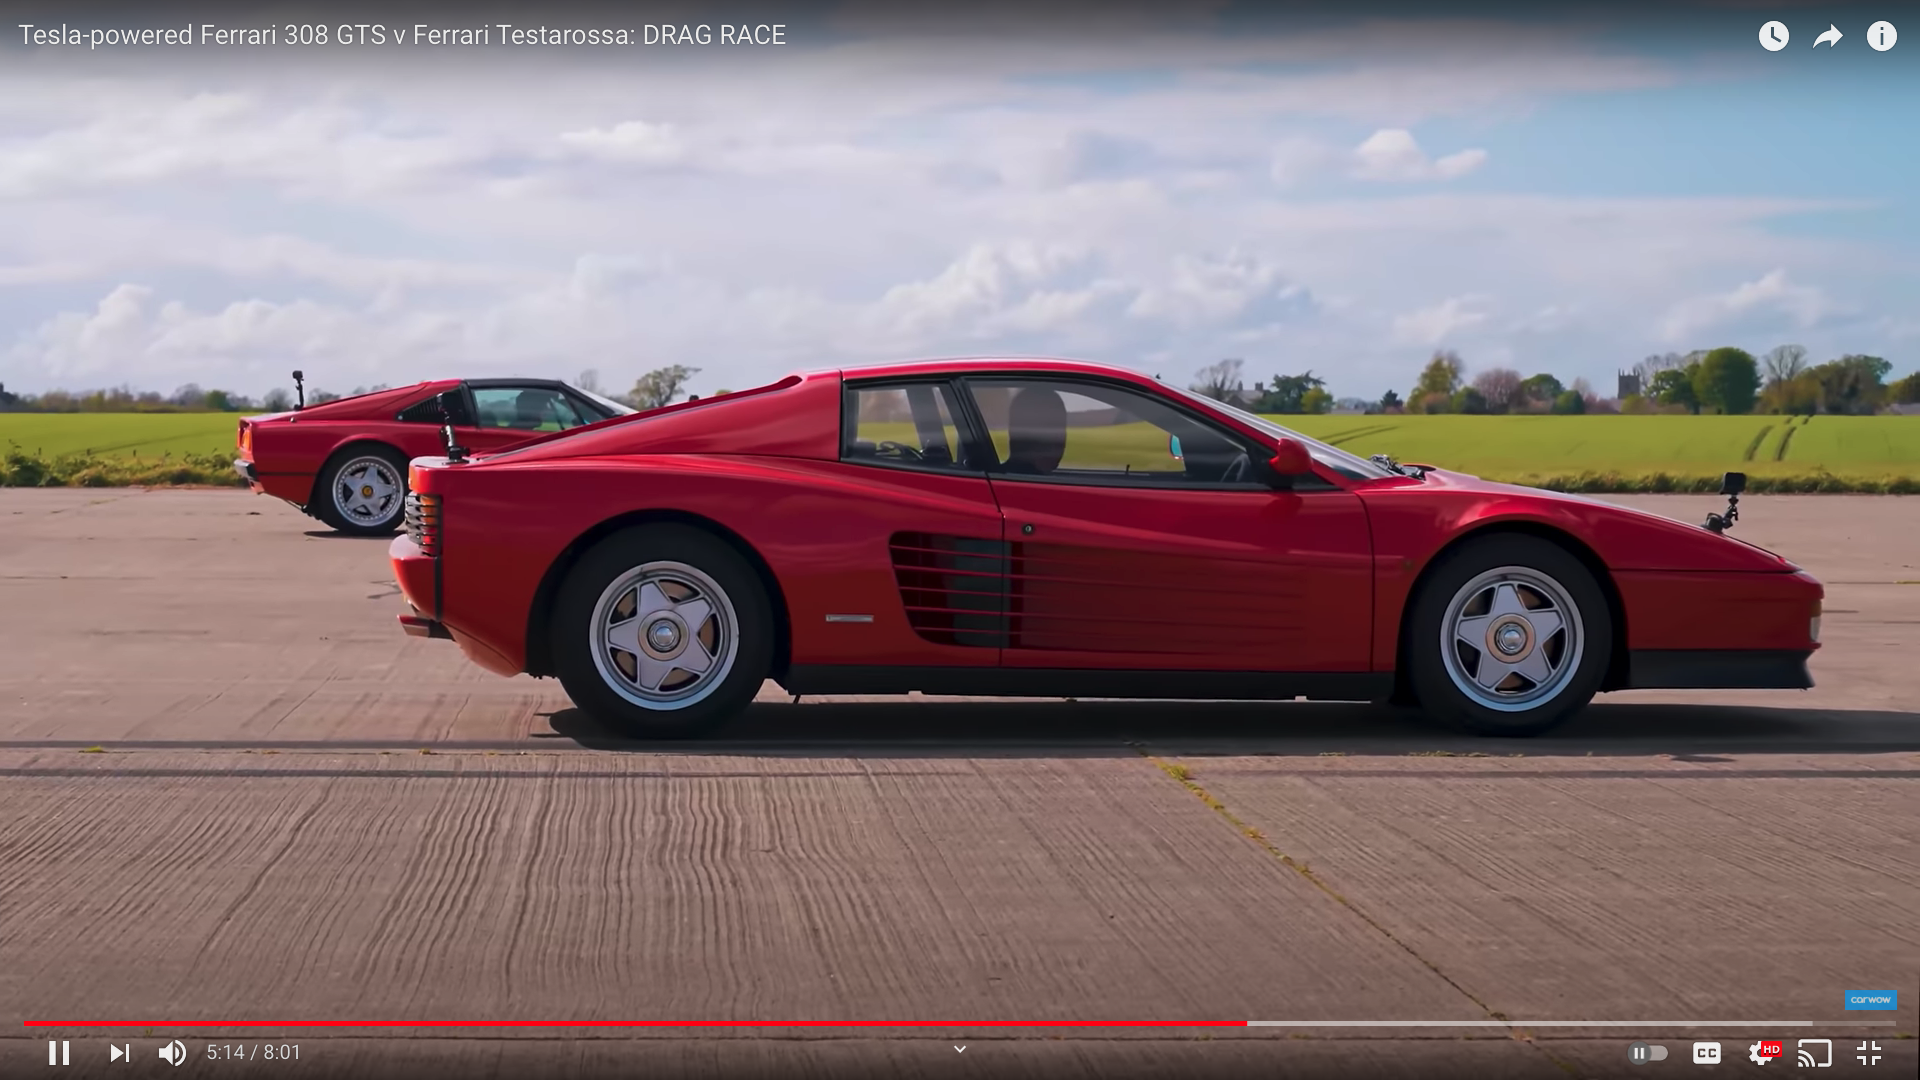 Watch A Tesla Swapped Ferrari 308 Annihilate A Testarossa In A Drag Race